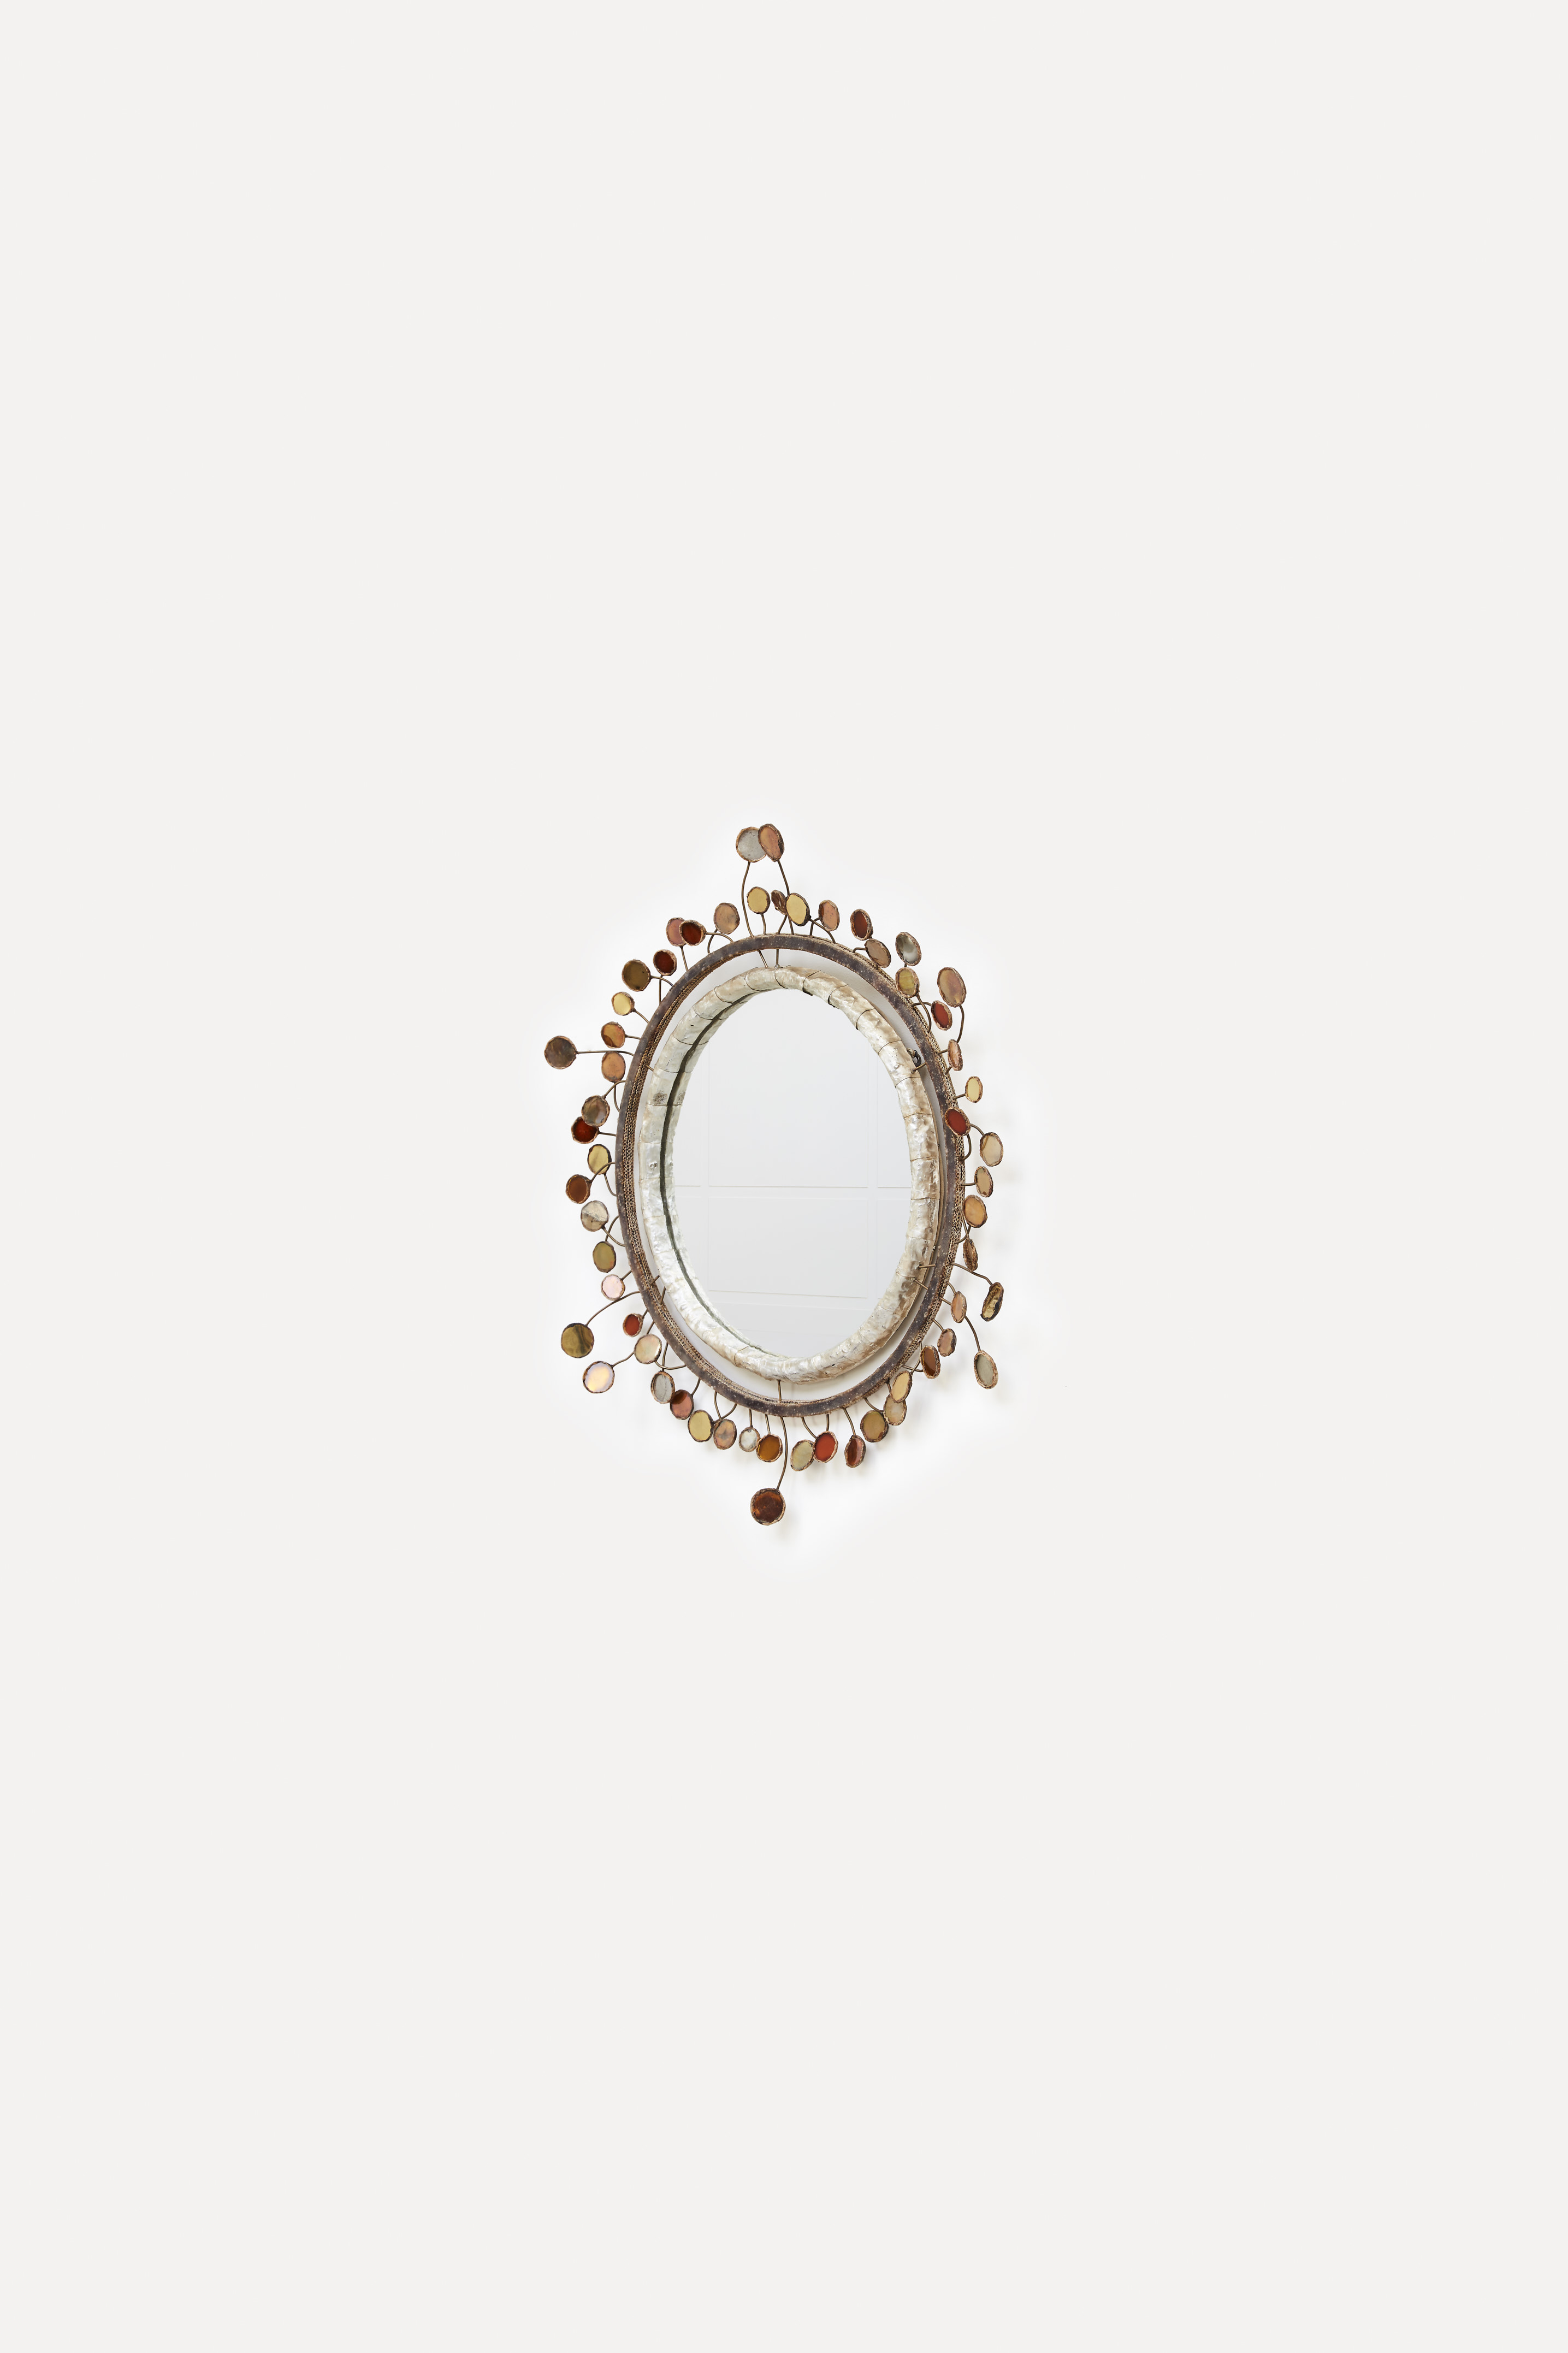 Line Vautrin, “Sequins” mirror, vue 01